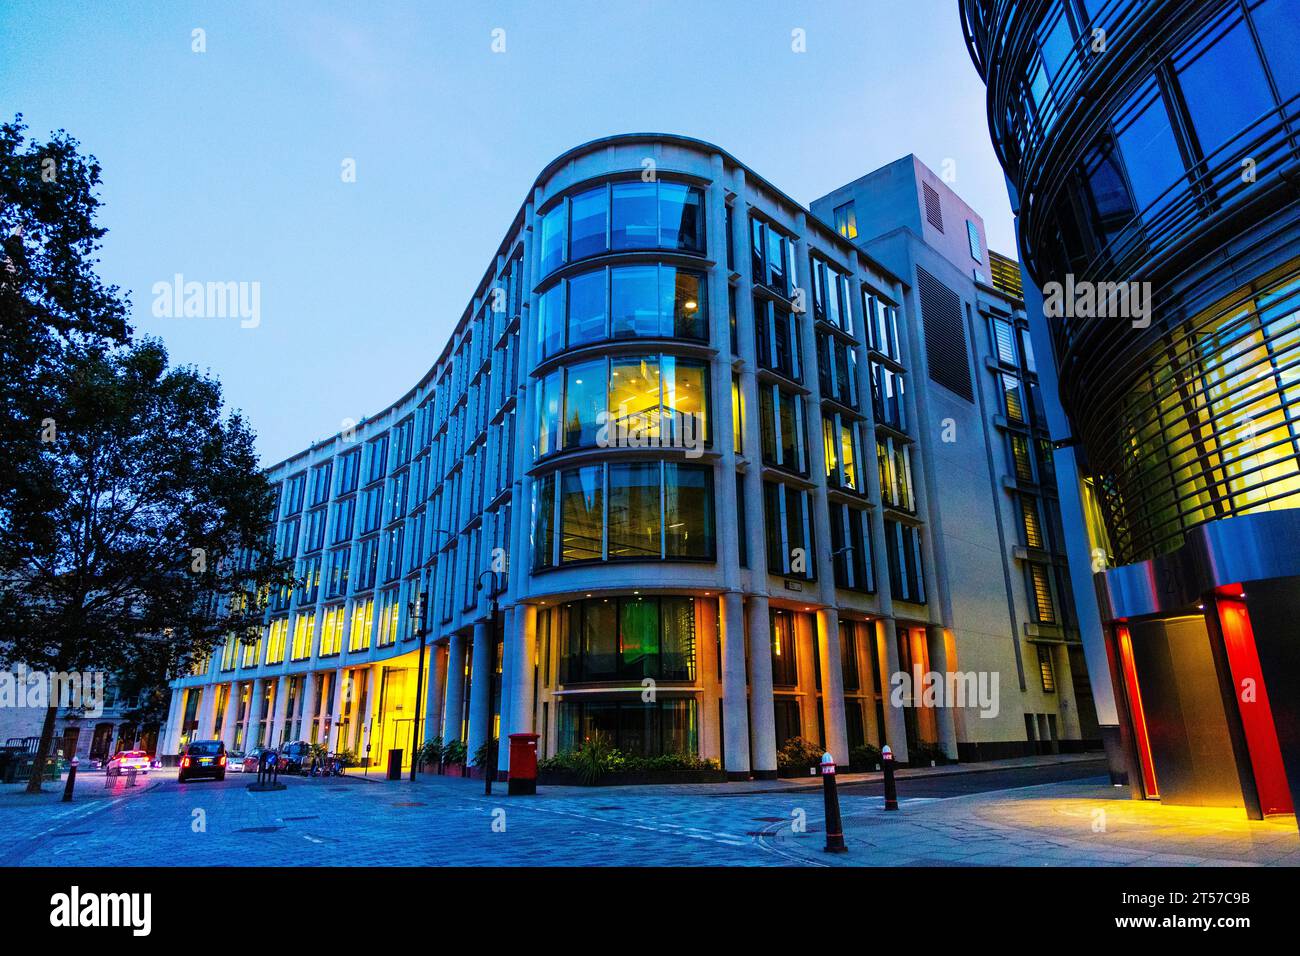 30 immeuble de la rue Gresham illuminé la nuit, City of London, Angleterre Banque D'Images